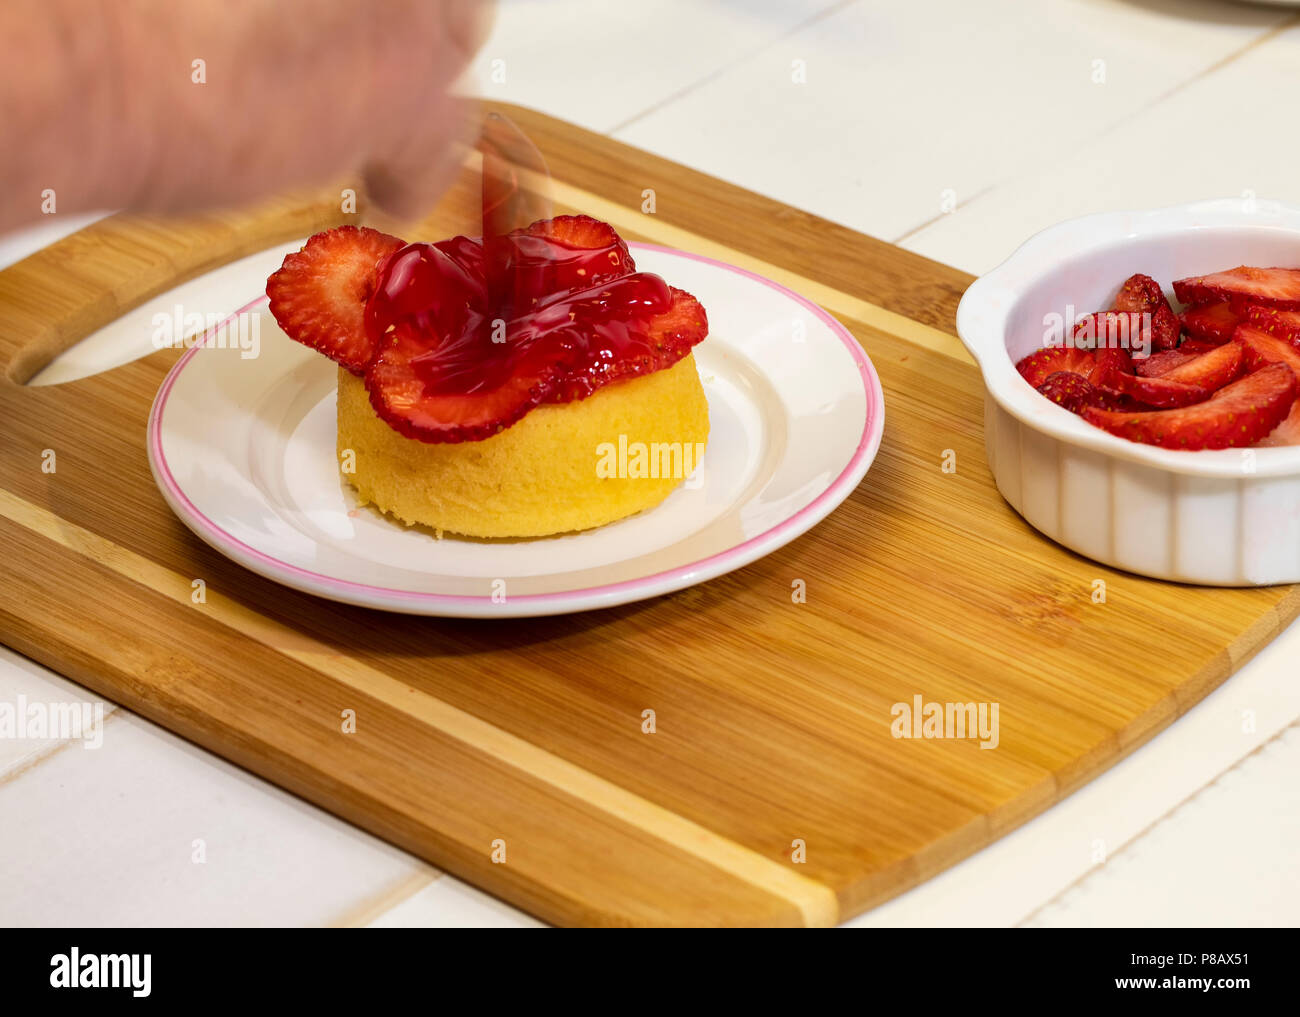 Vorbereitung shortcake Dessert mit frischen Erdbeeren, Blaubeeren, und Schlagsahne. Stockfoto